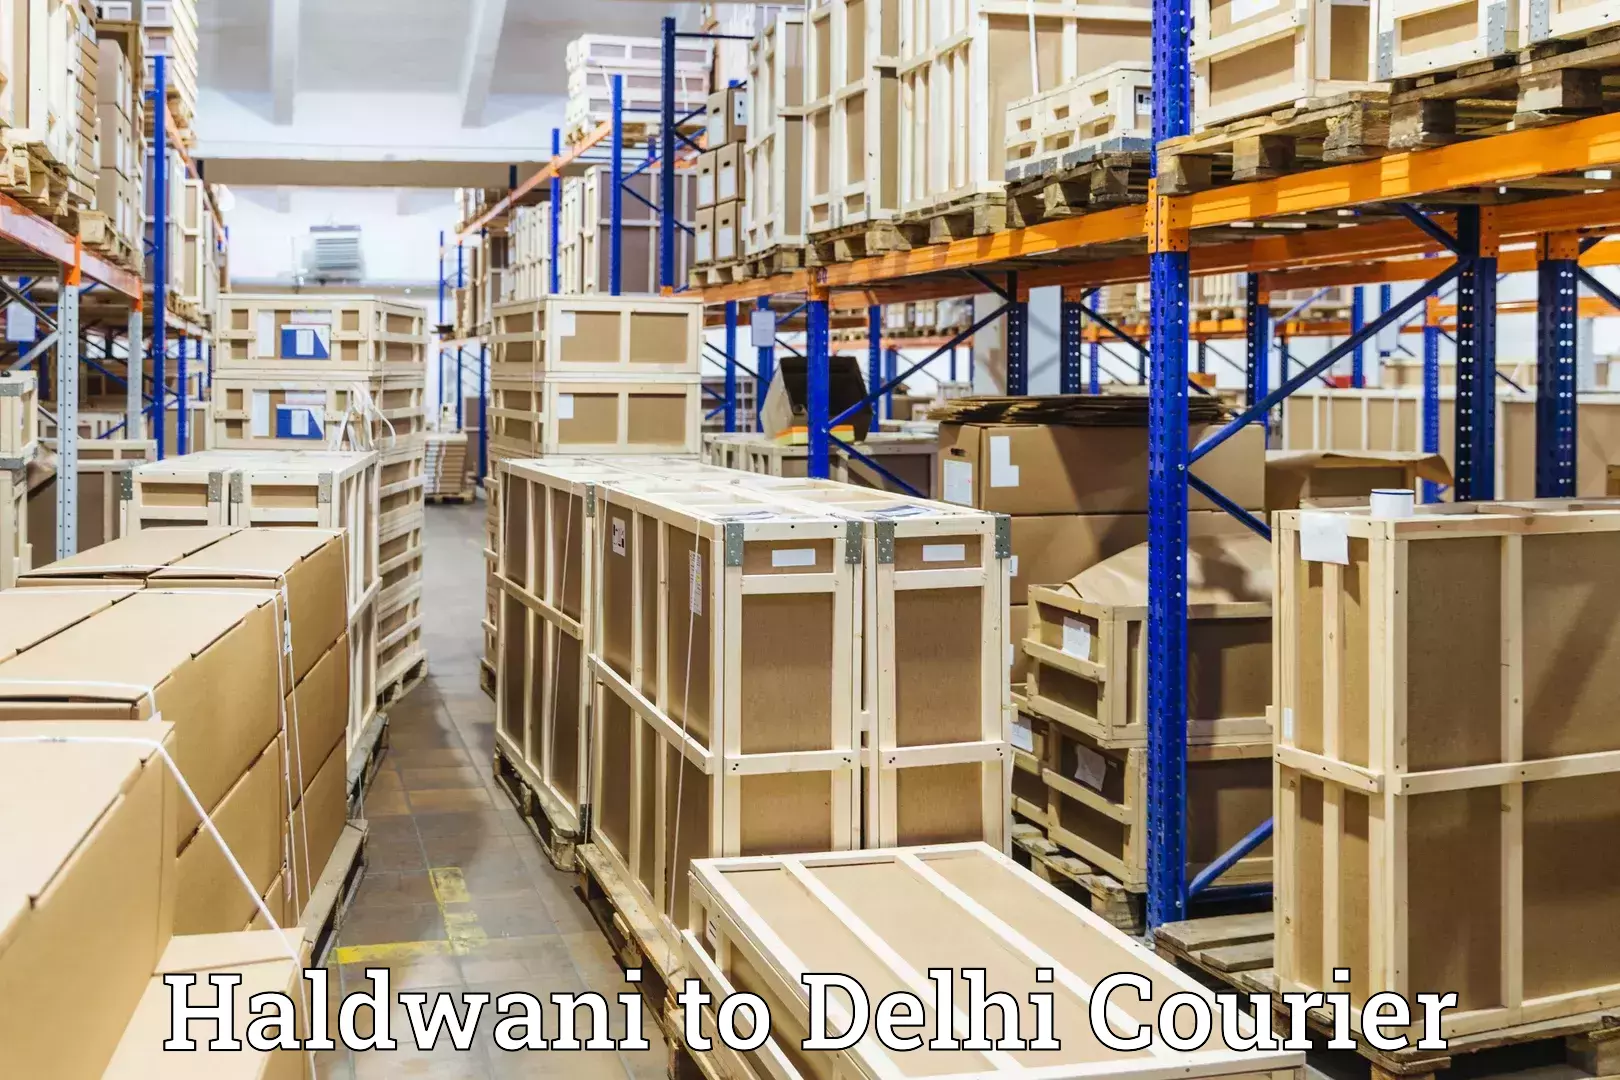 Door-to-door baggage service Haldwani to Delhi Technological University DTU